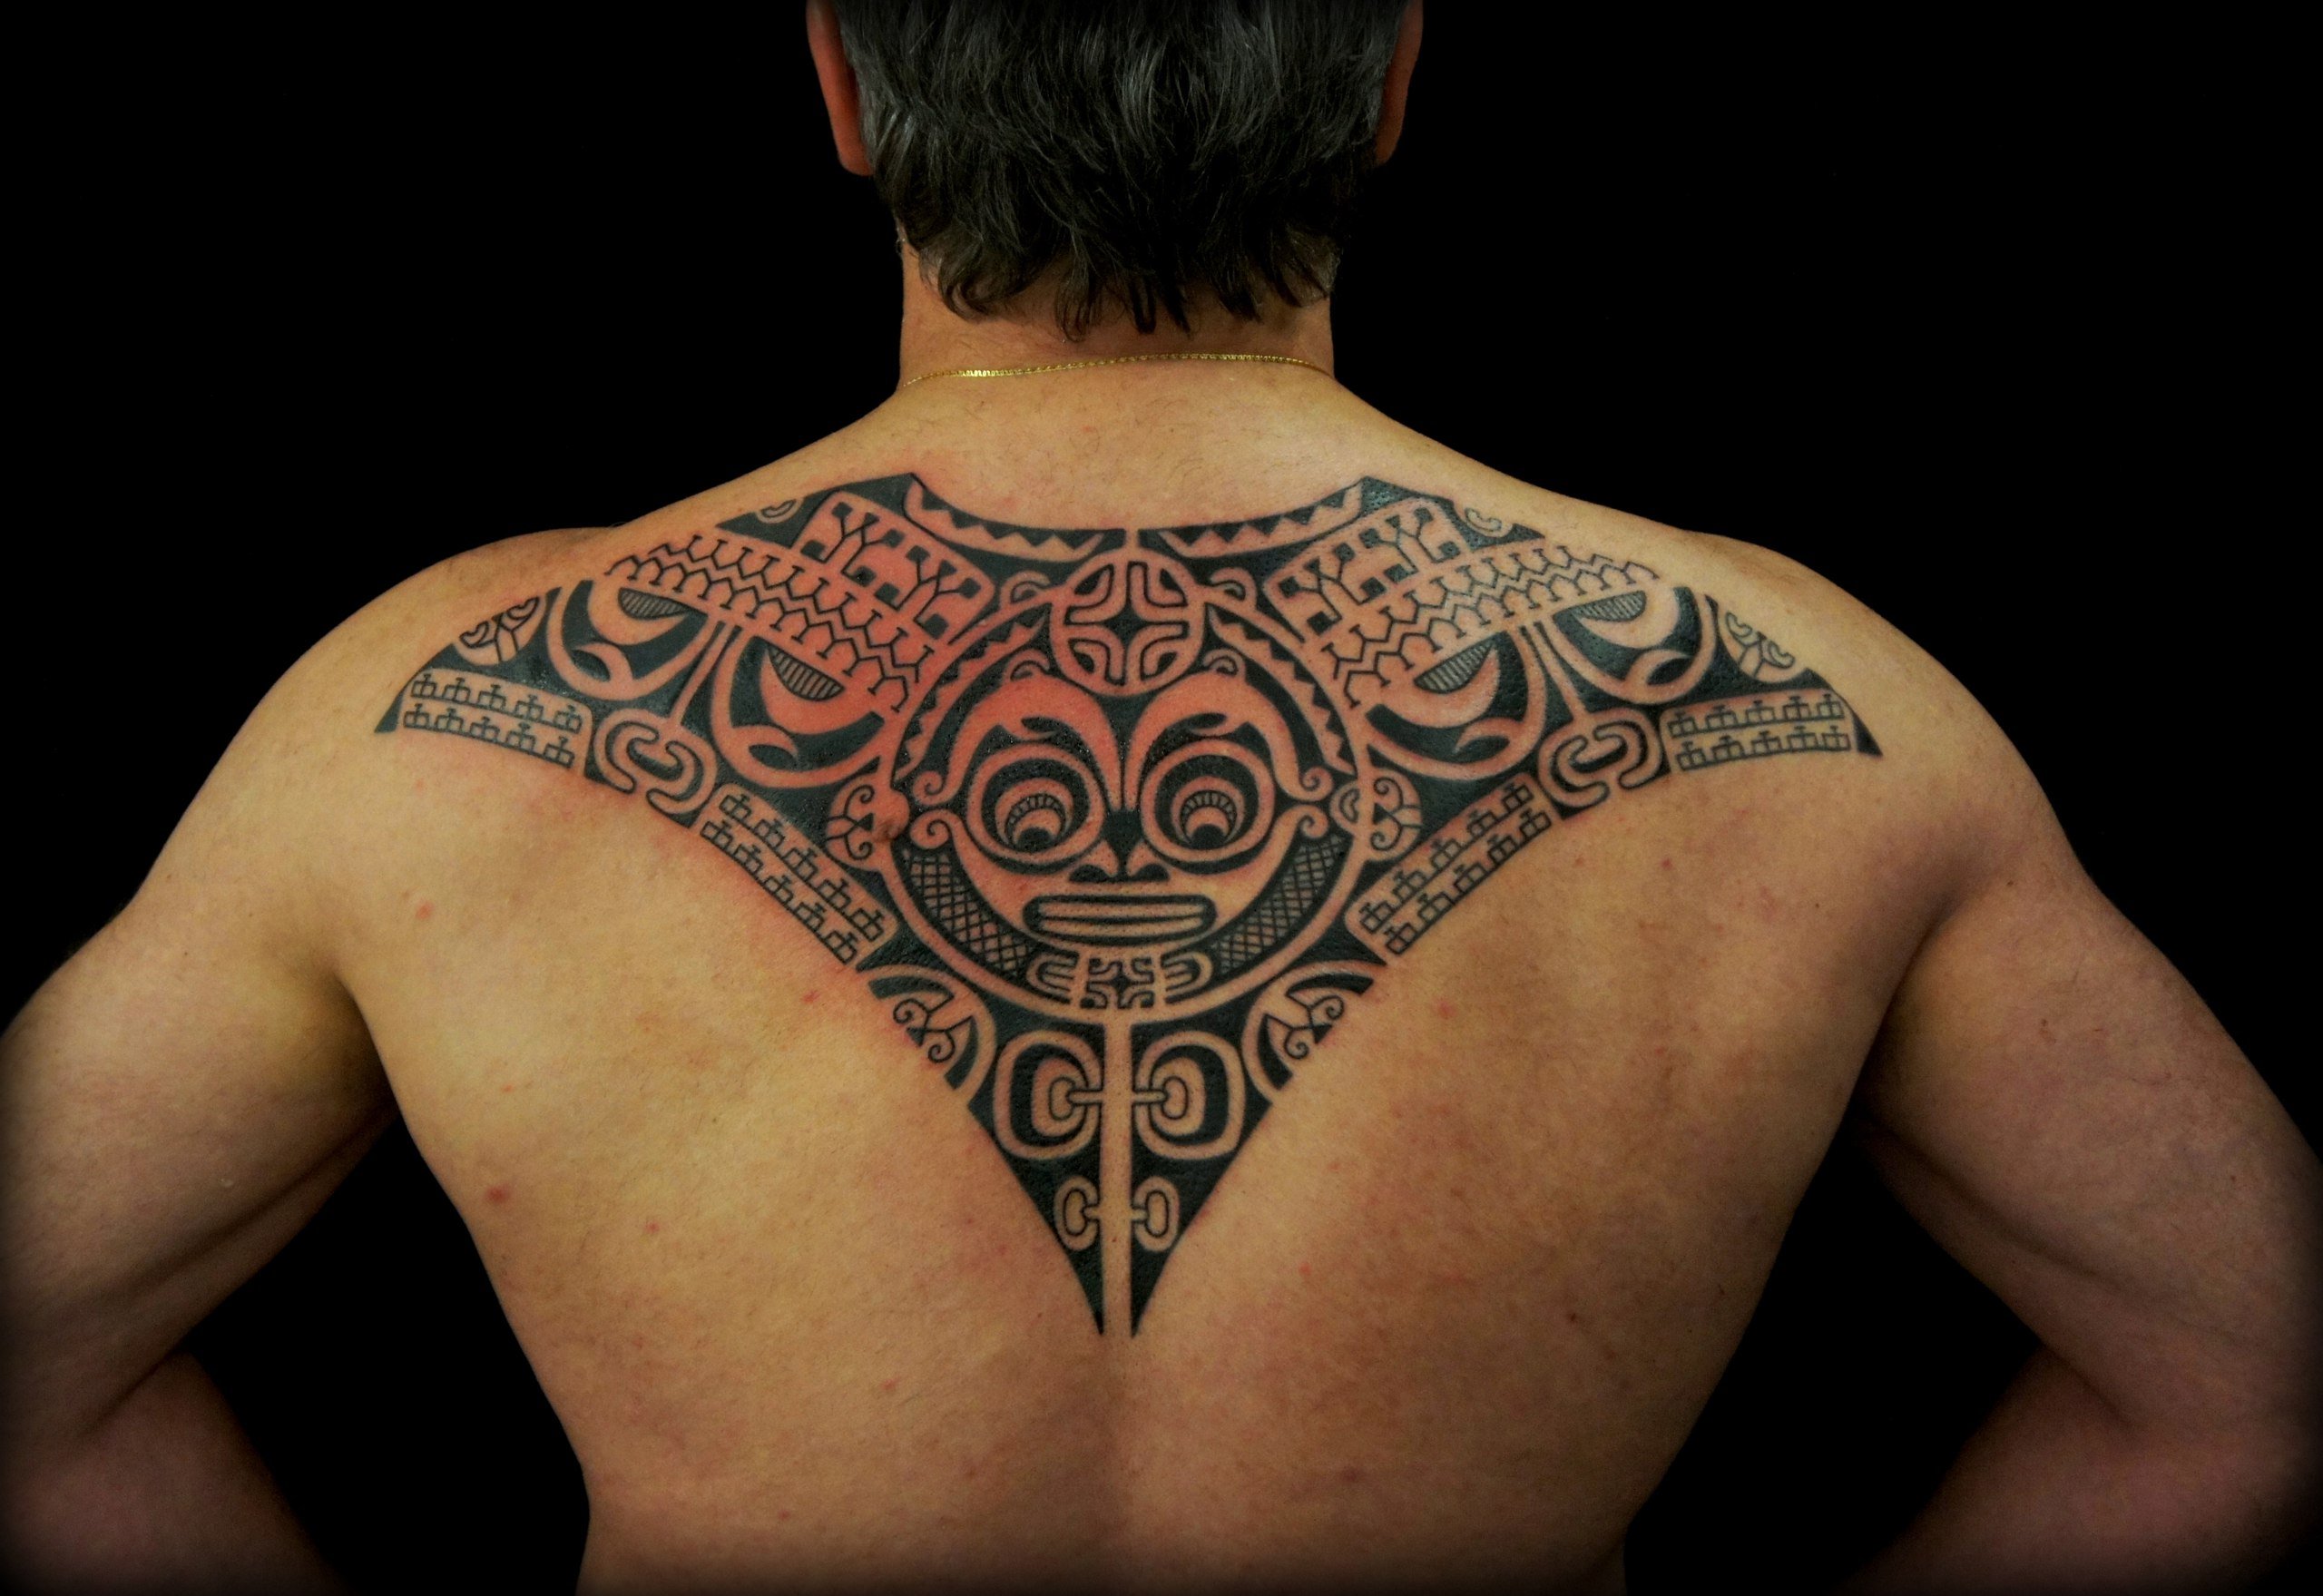 Тату на спине для мужчин: особенности, цветовая палитра, где лучше набить, размер татуировки, нюансы нанесения, самые популярные эскизы и их значение с фото